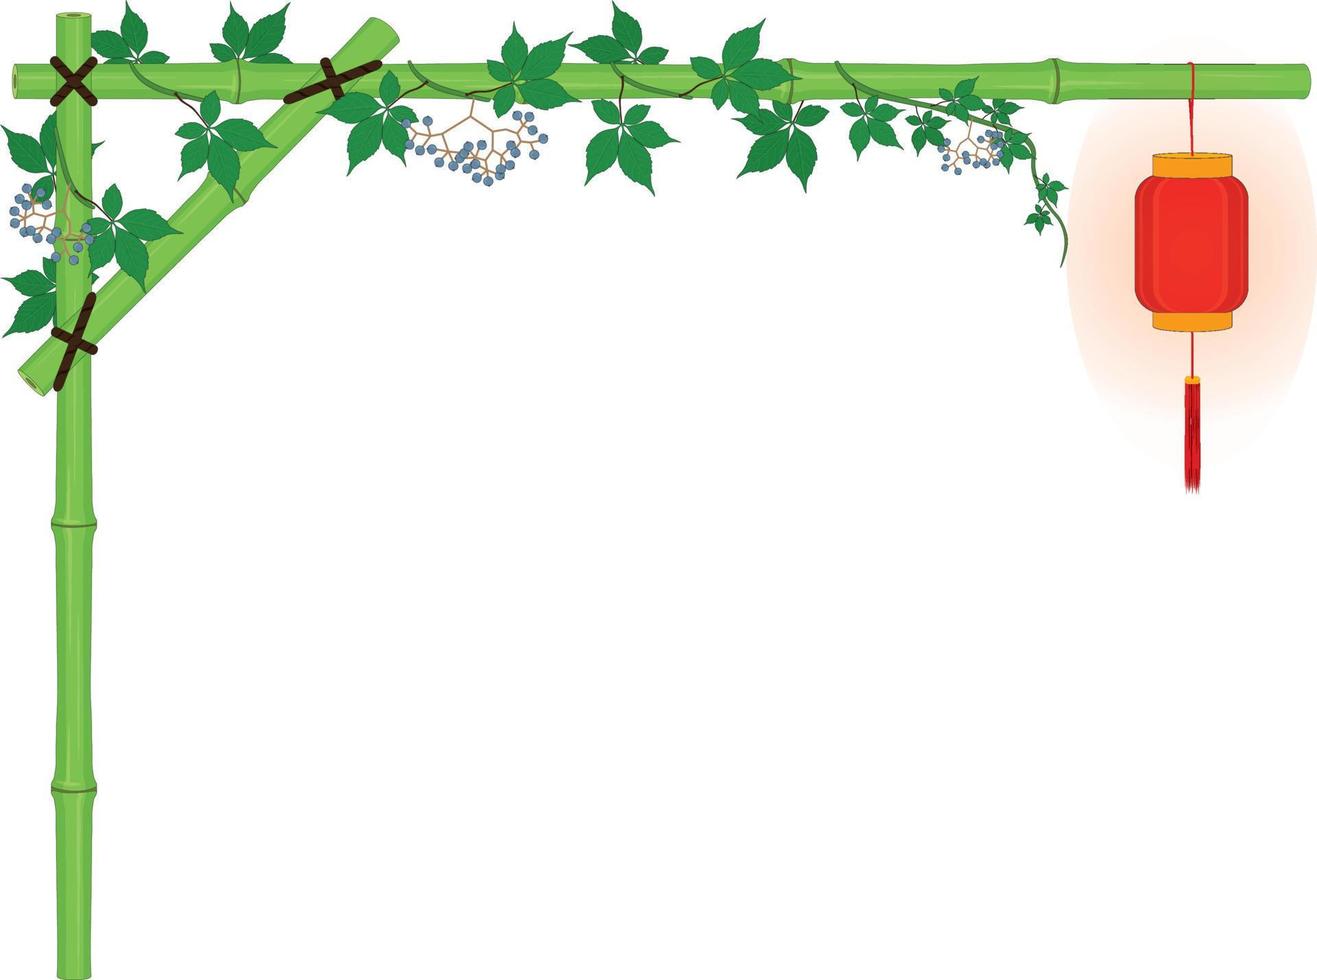 horizontale bamboe boog frame met rode Aziatische lantaarn en Virginia klimplant wijnstokken vector illustratie